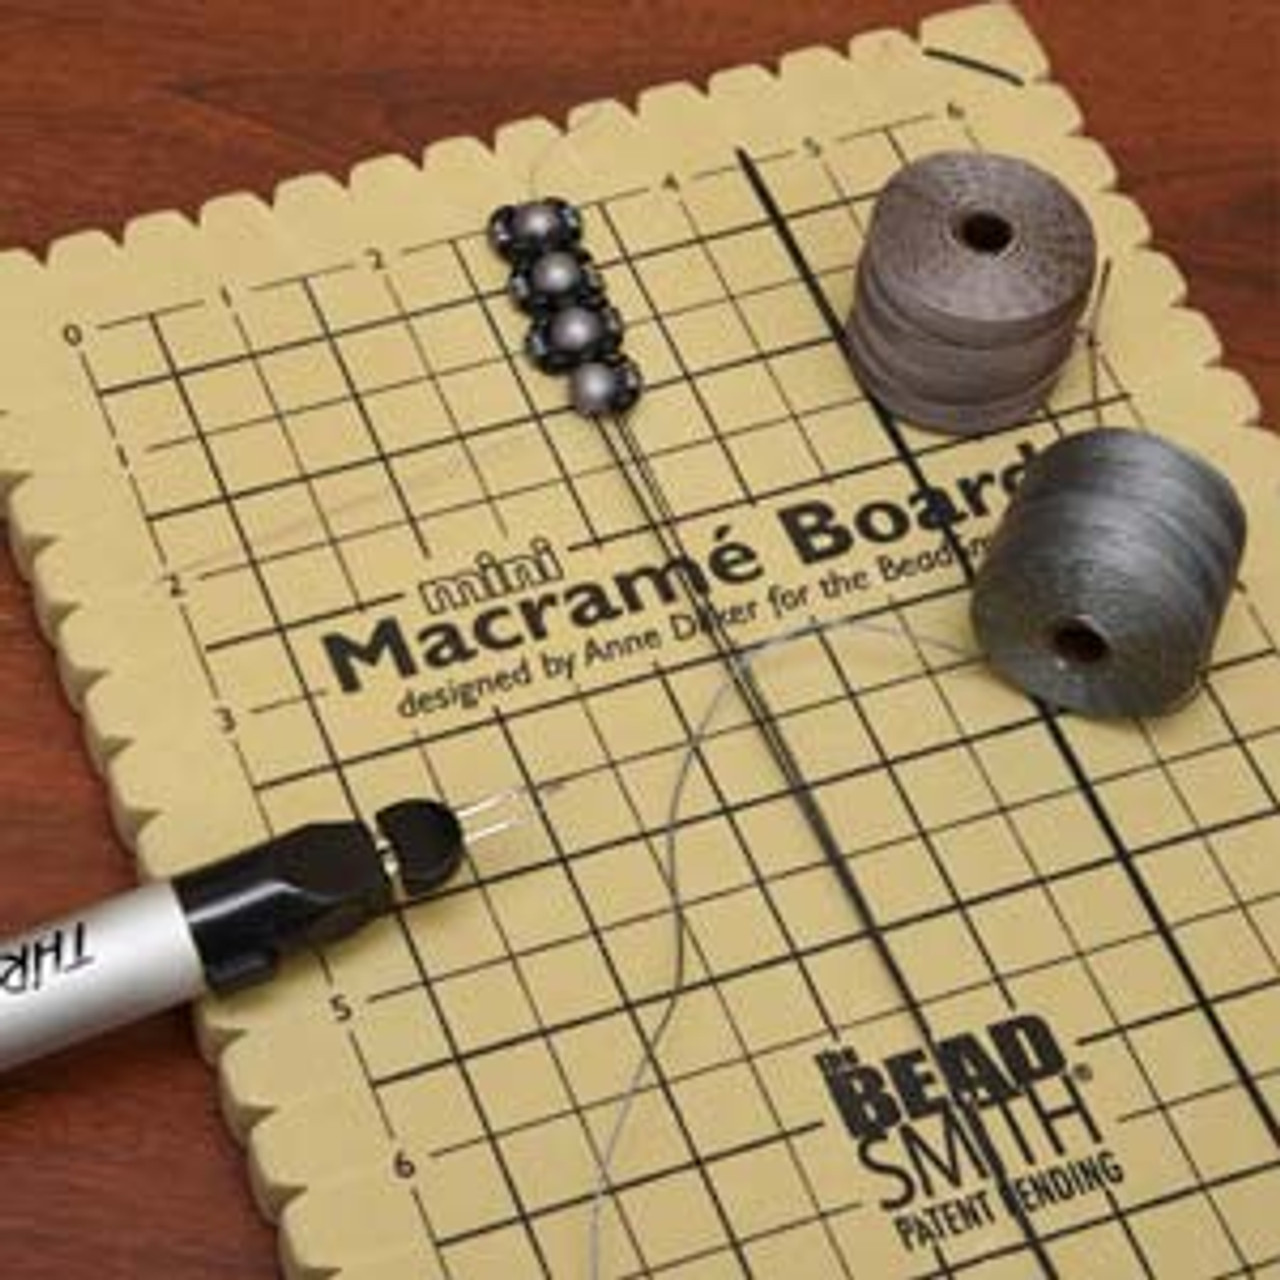 Macrame Board With T Pins, Lightweight Knotting Board, Foam